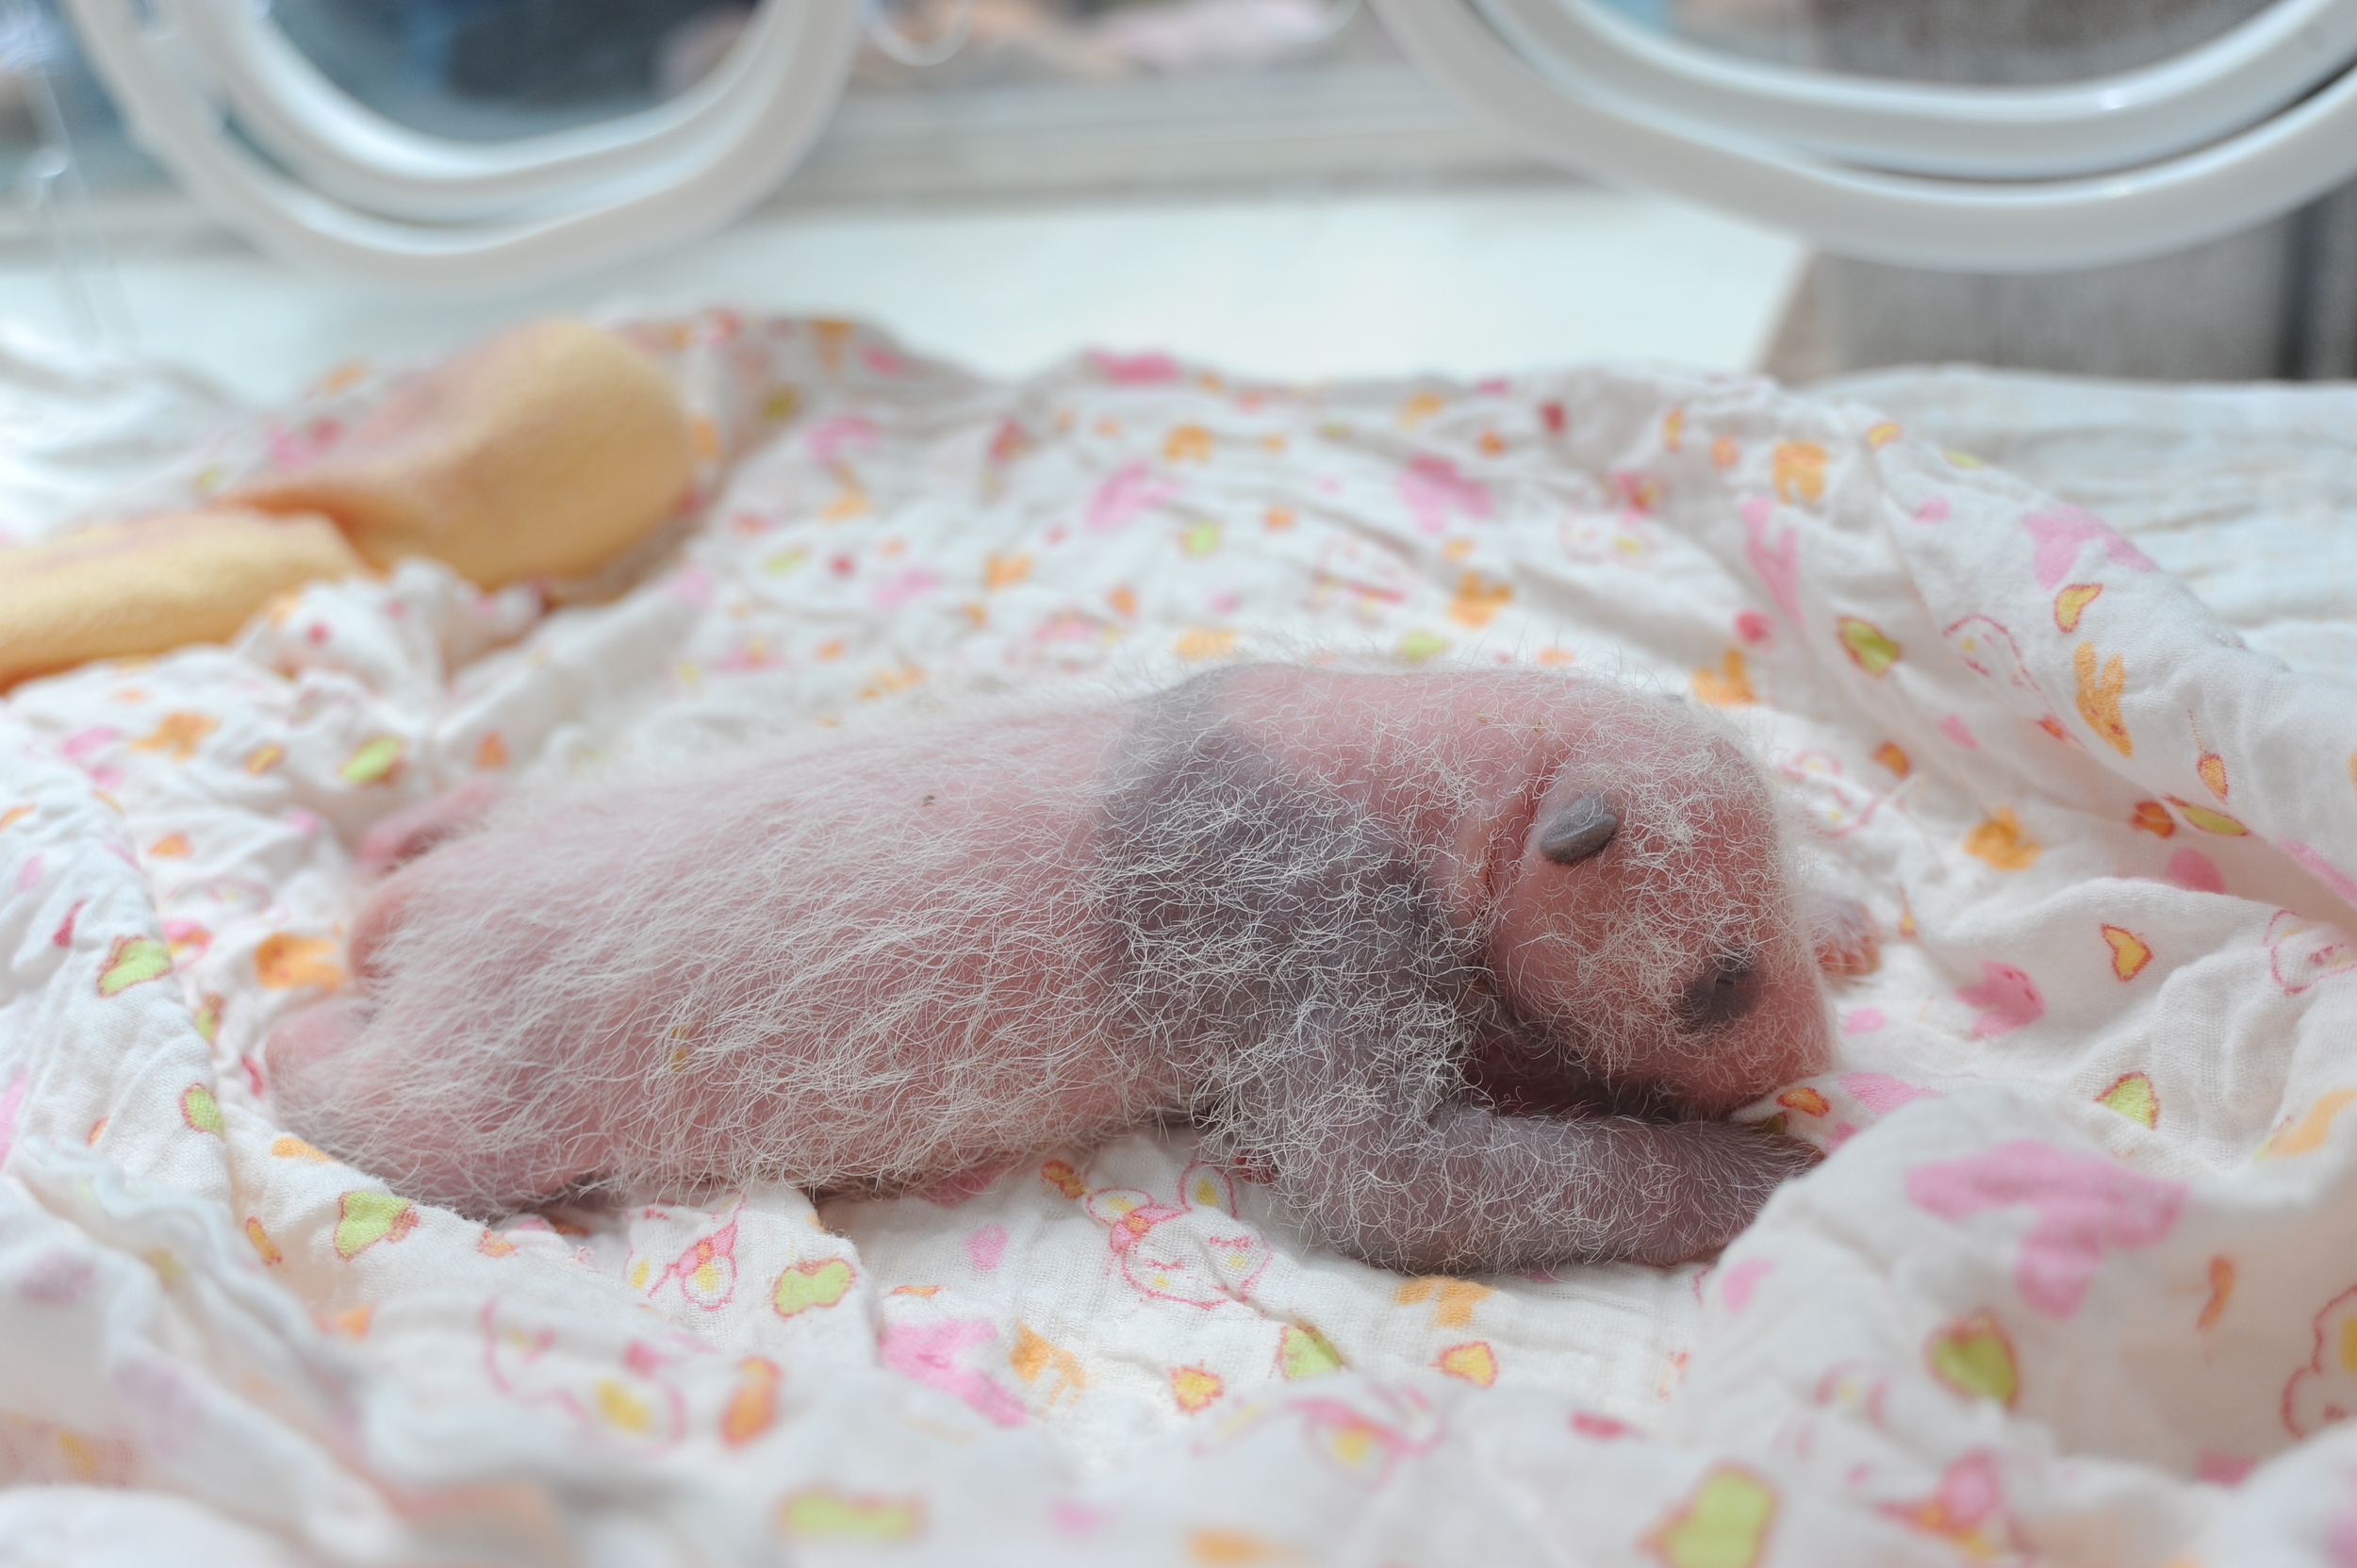 Родившийся детеныш панды. Детеныш коалы новорожденный. Панда с детёнышем. Новорожденные панды. Детёныш панды новорожденный.